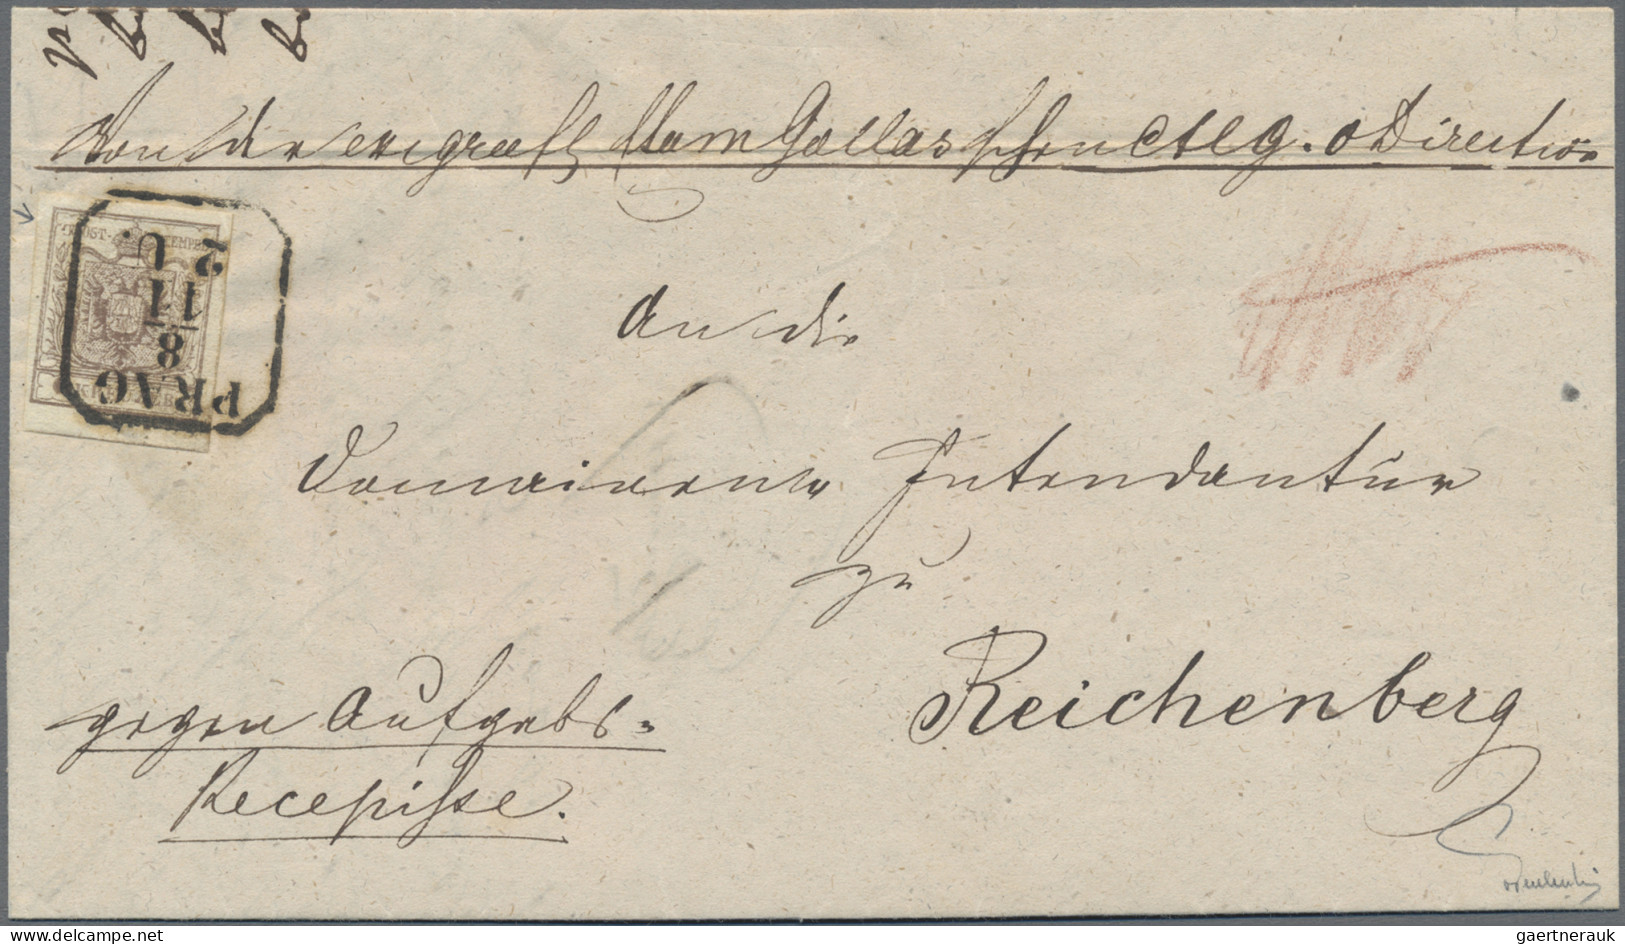 Österreich: 1850, 6 Kr. Braun, Handpapier, Type III, Zwei Exemplare In Verschied - Briefe U. Dokumente